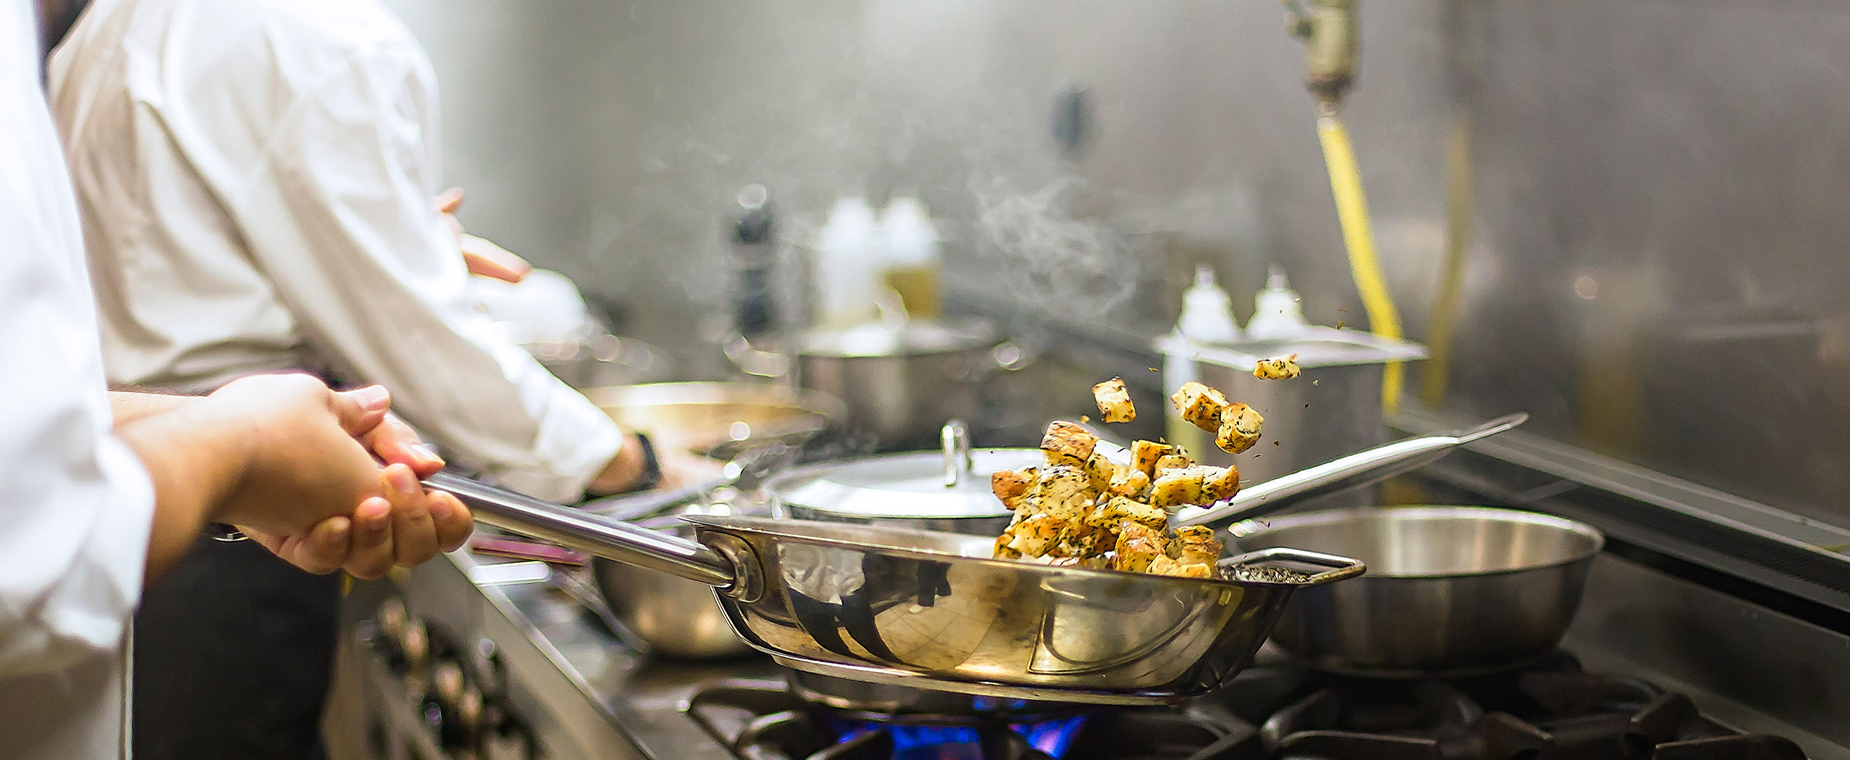 Köche stehen in einer Küche und bereiten auf einem Gasherd Essen zu.